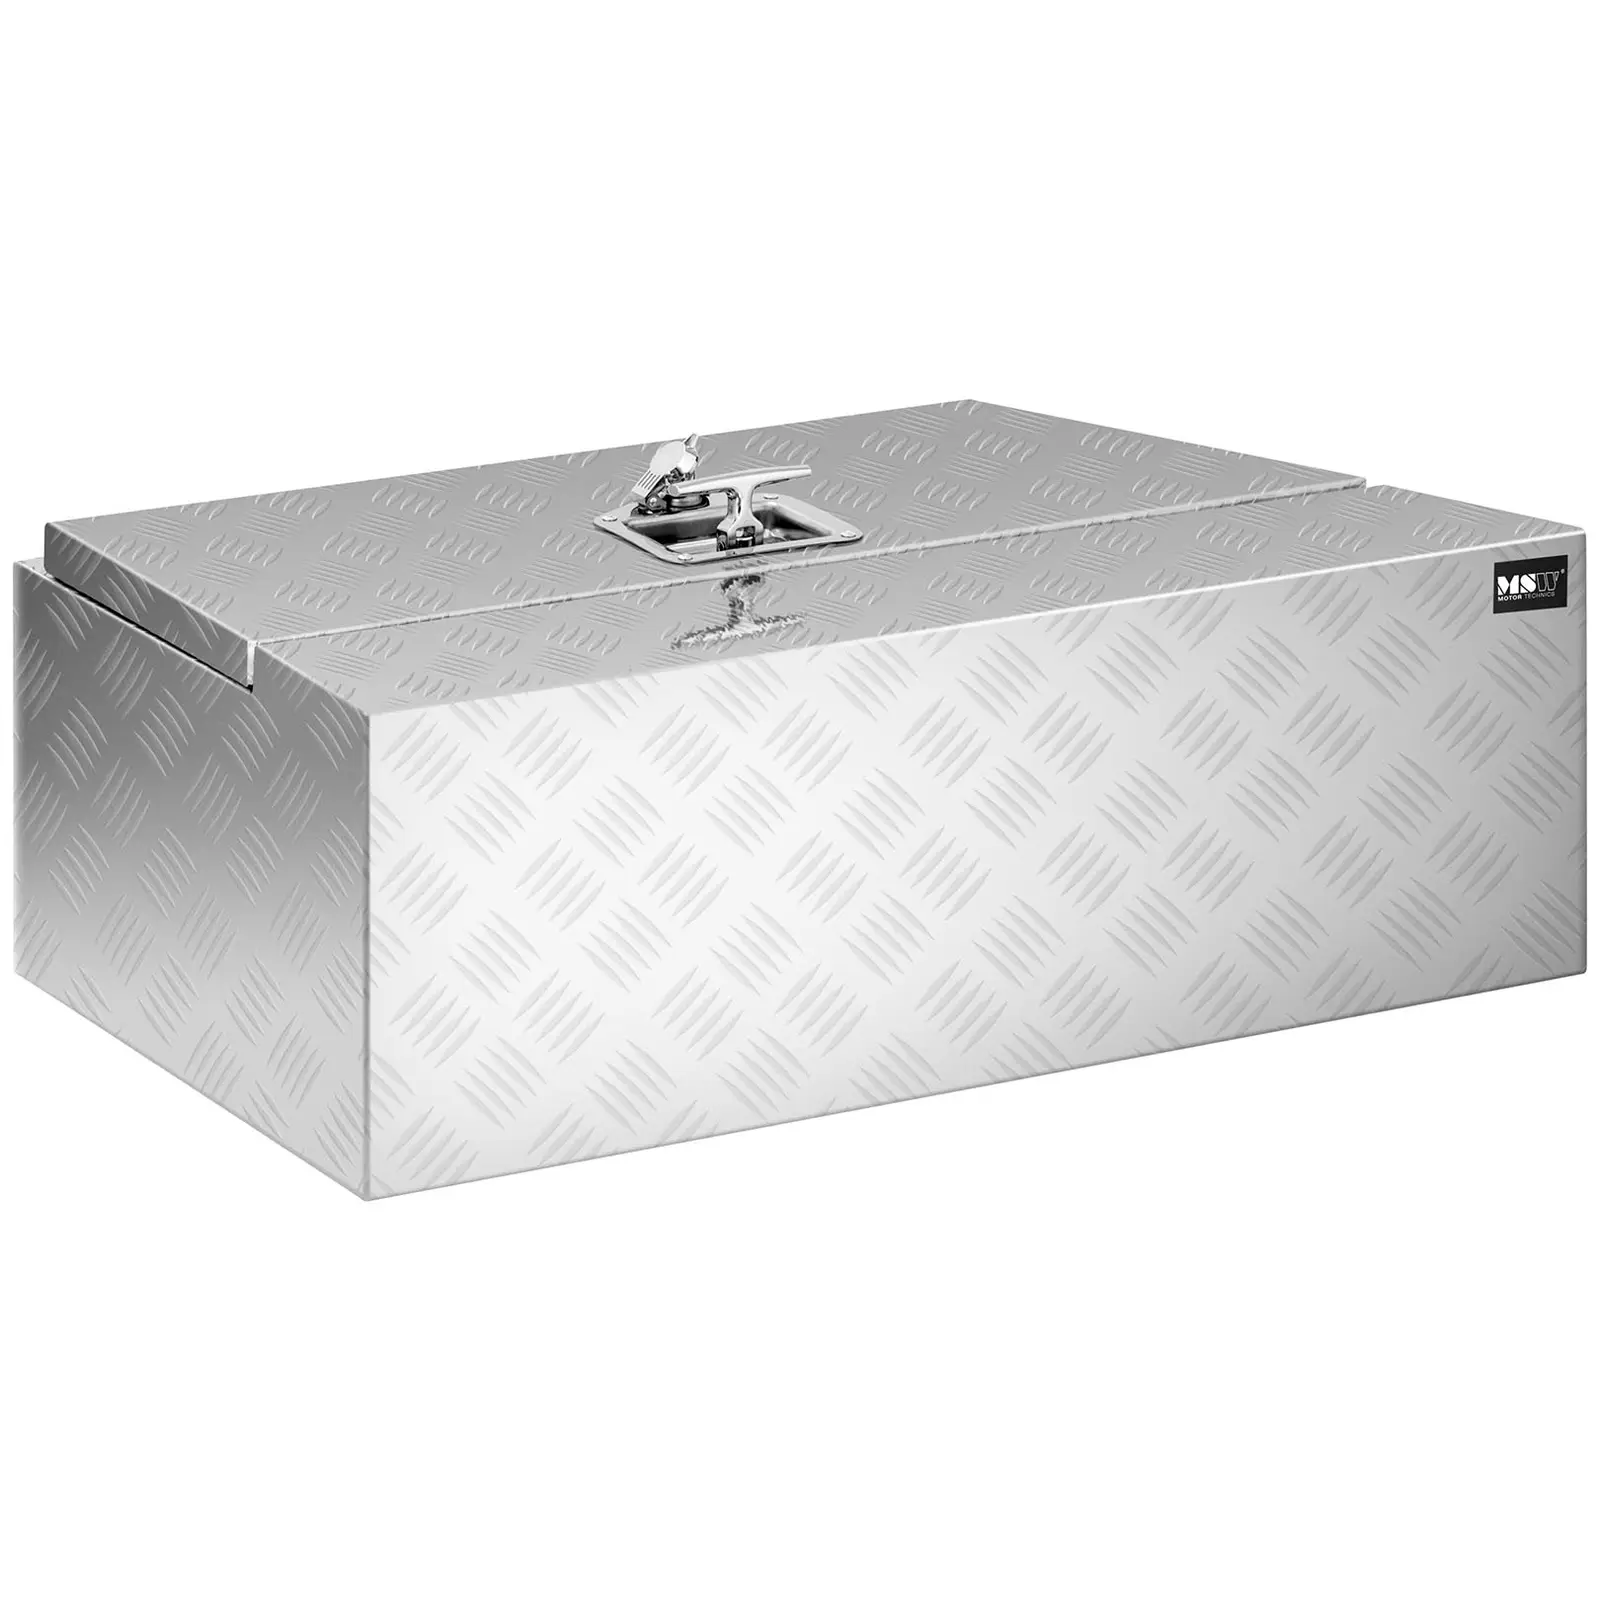 Hliníkový box - rýhovaný plech - 75 x 25 x 40 cm - 75 l - uzamykatelný - nakřivo